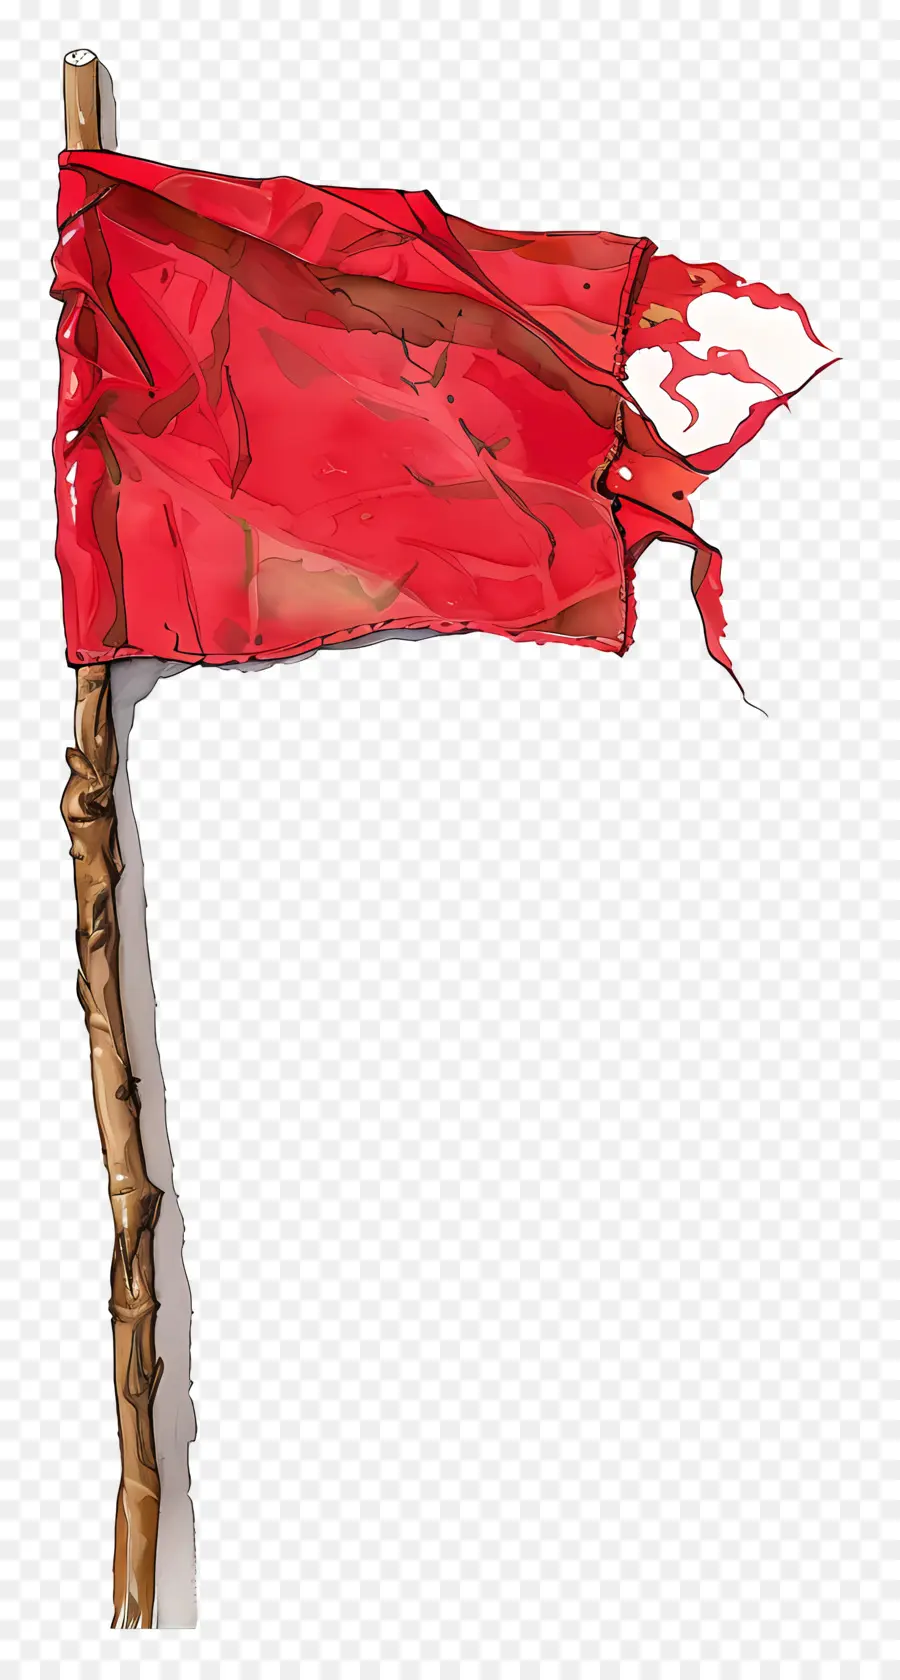 Fandiera rossa numero 3 Simbolo di scintilla di stoffa - Bandiera rossa con il numero 3 che soffia lateralmente